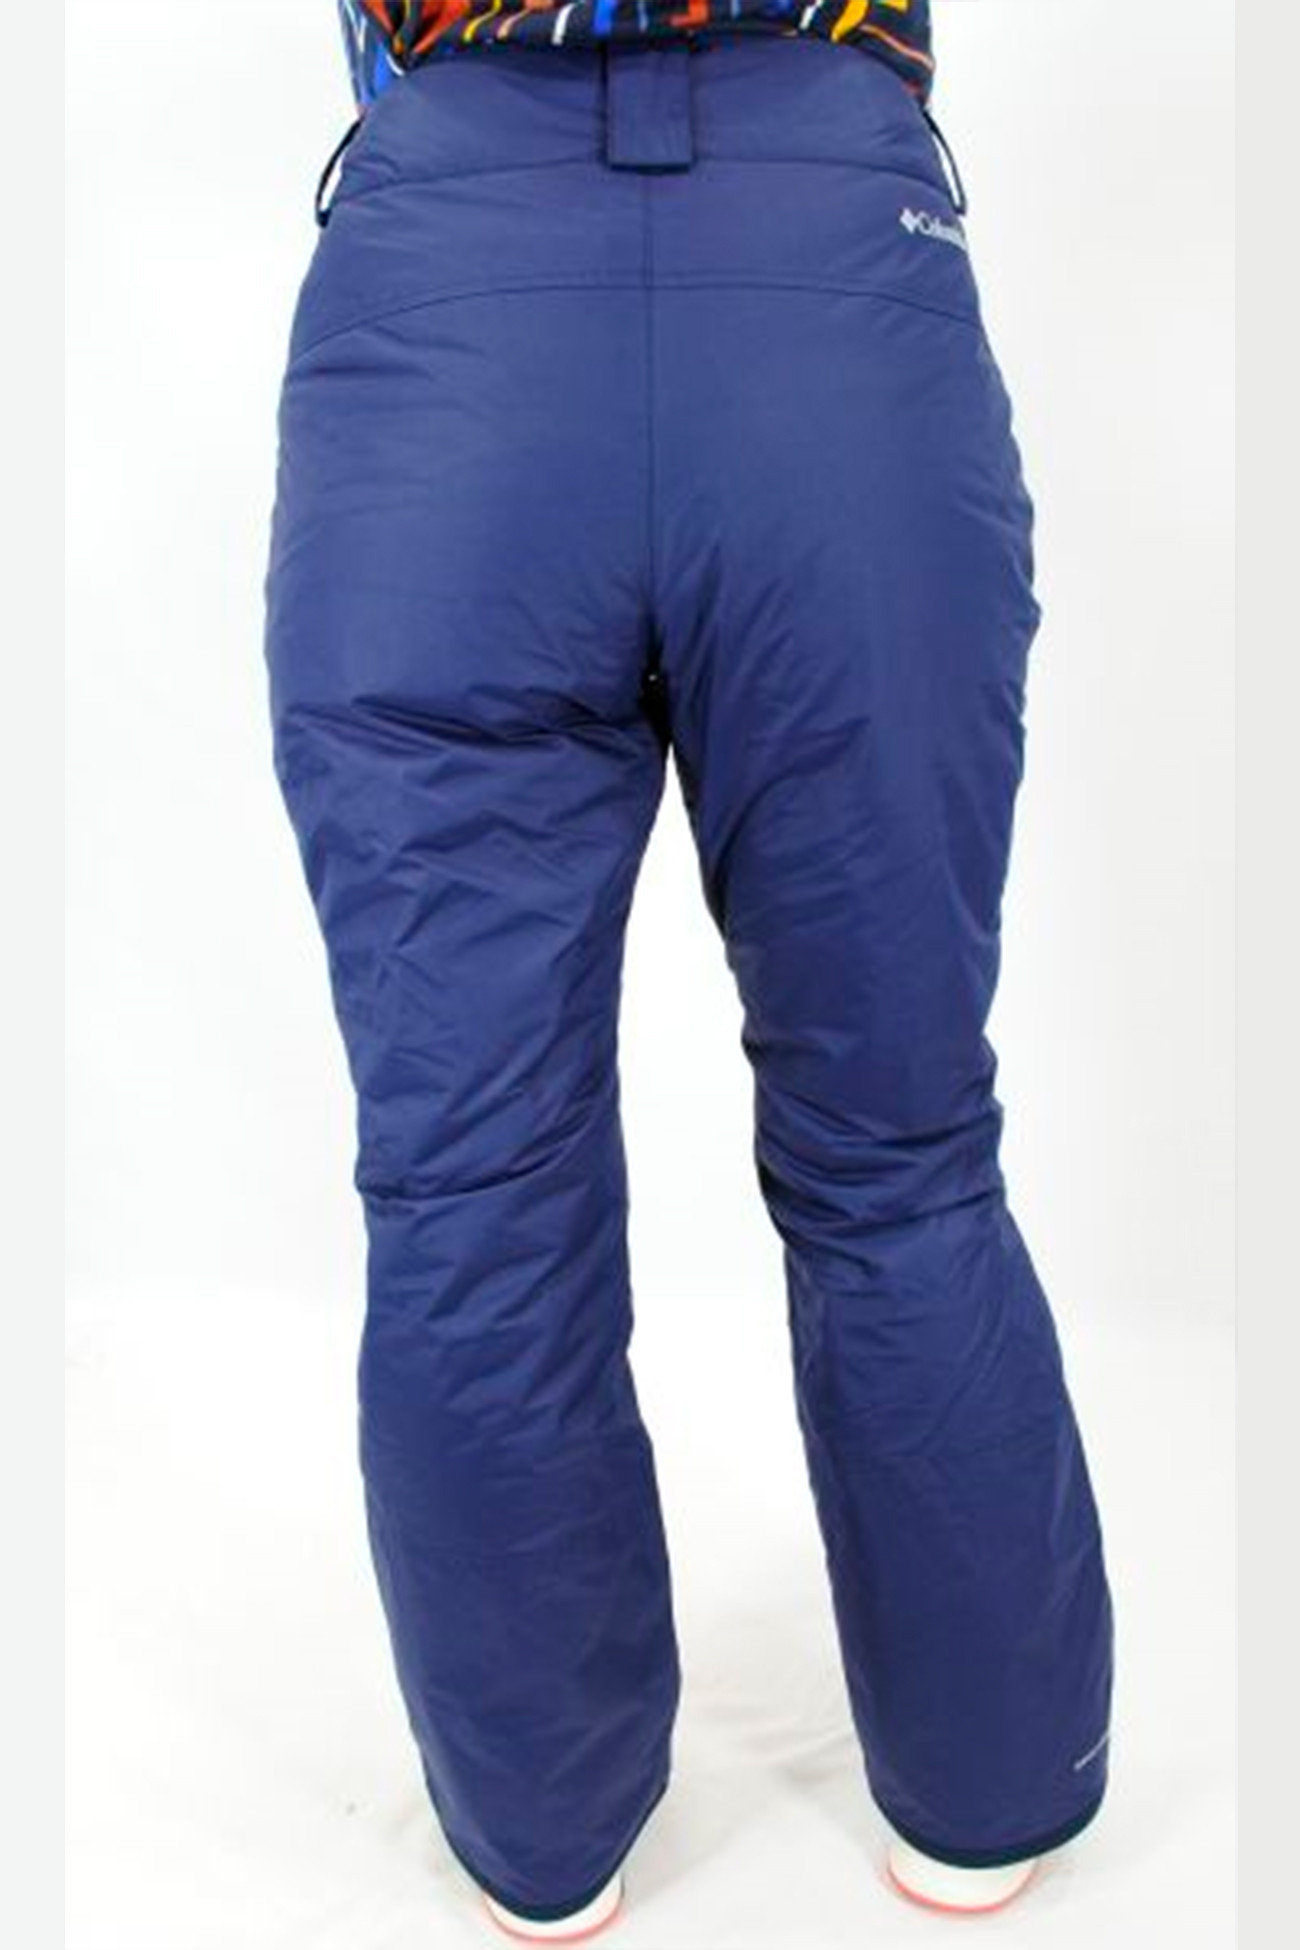 Женские брюки утепленные горнолыжные Columbia SNOW SHREDDER™ PANT синие 1976861-472 